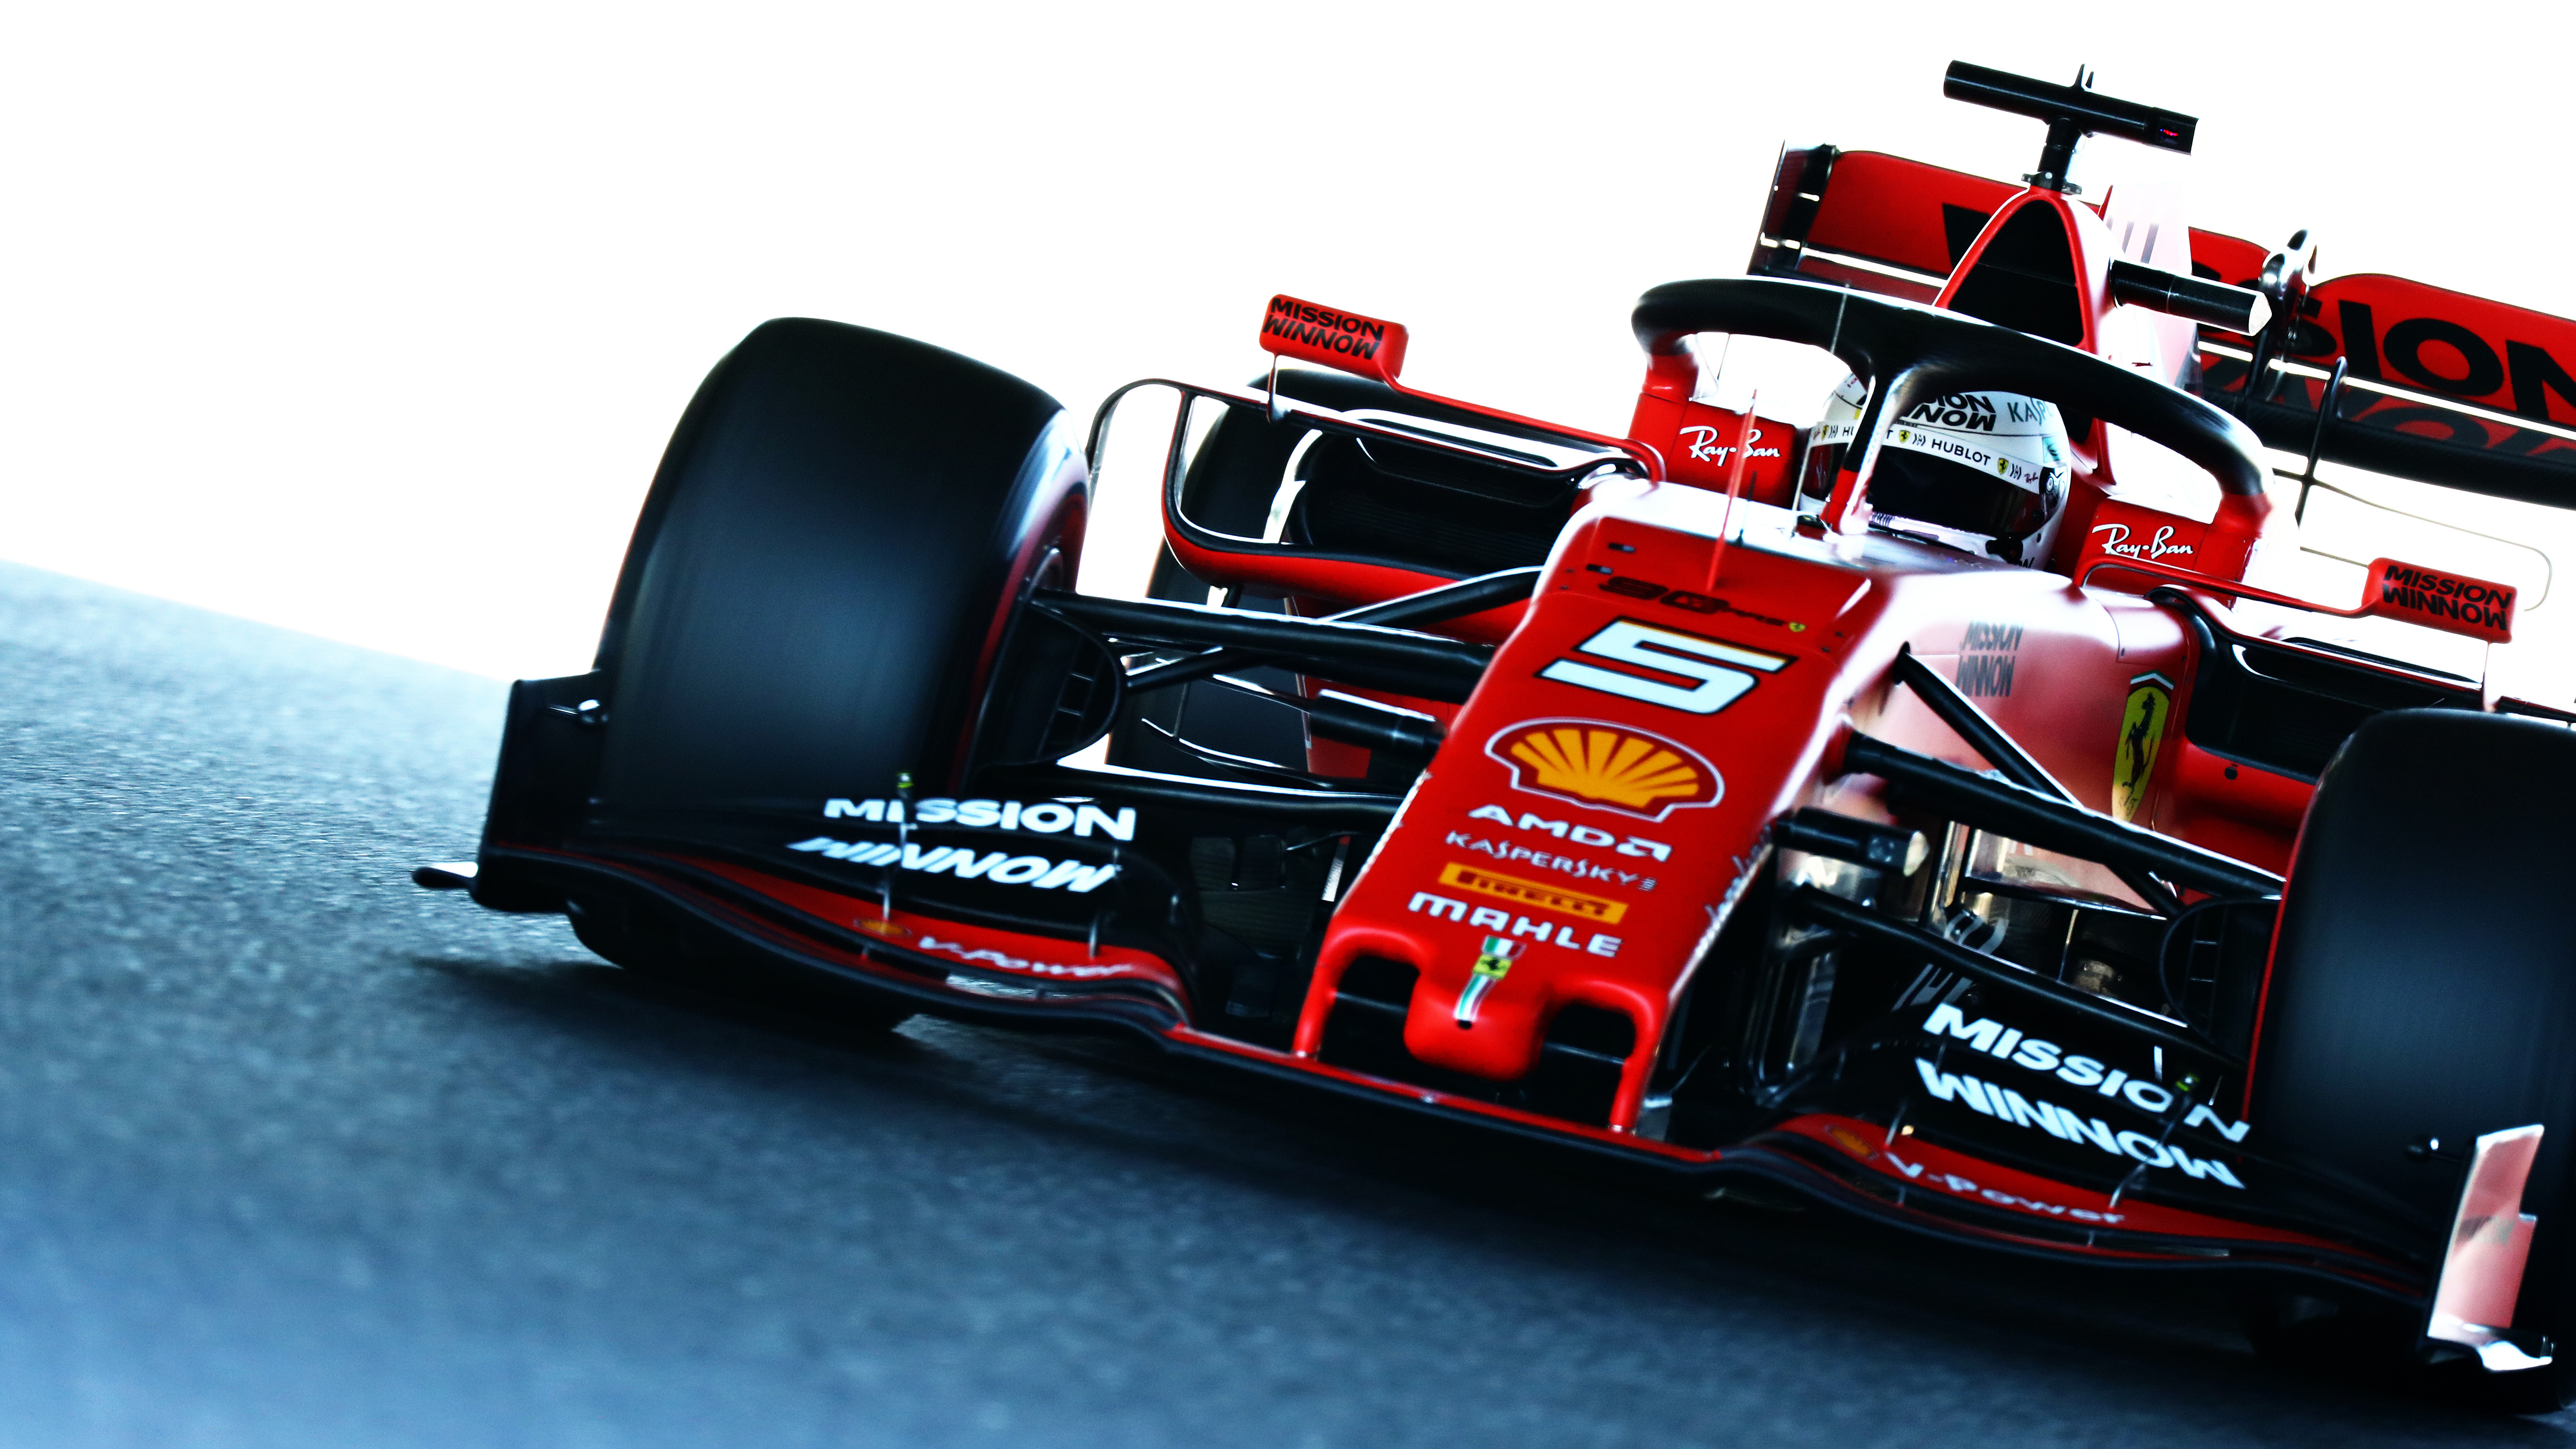 Morgen For det andet Kærlig Japanese Grand Prix: Qualifying Facts and Stats | Formula 1®